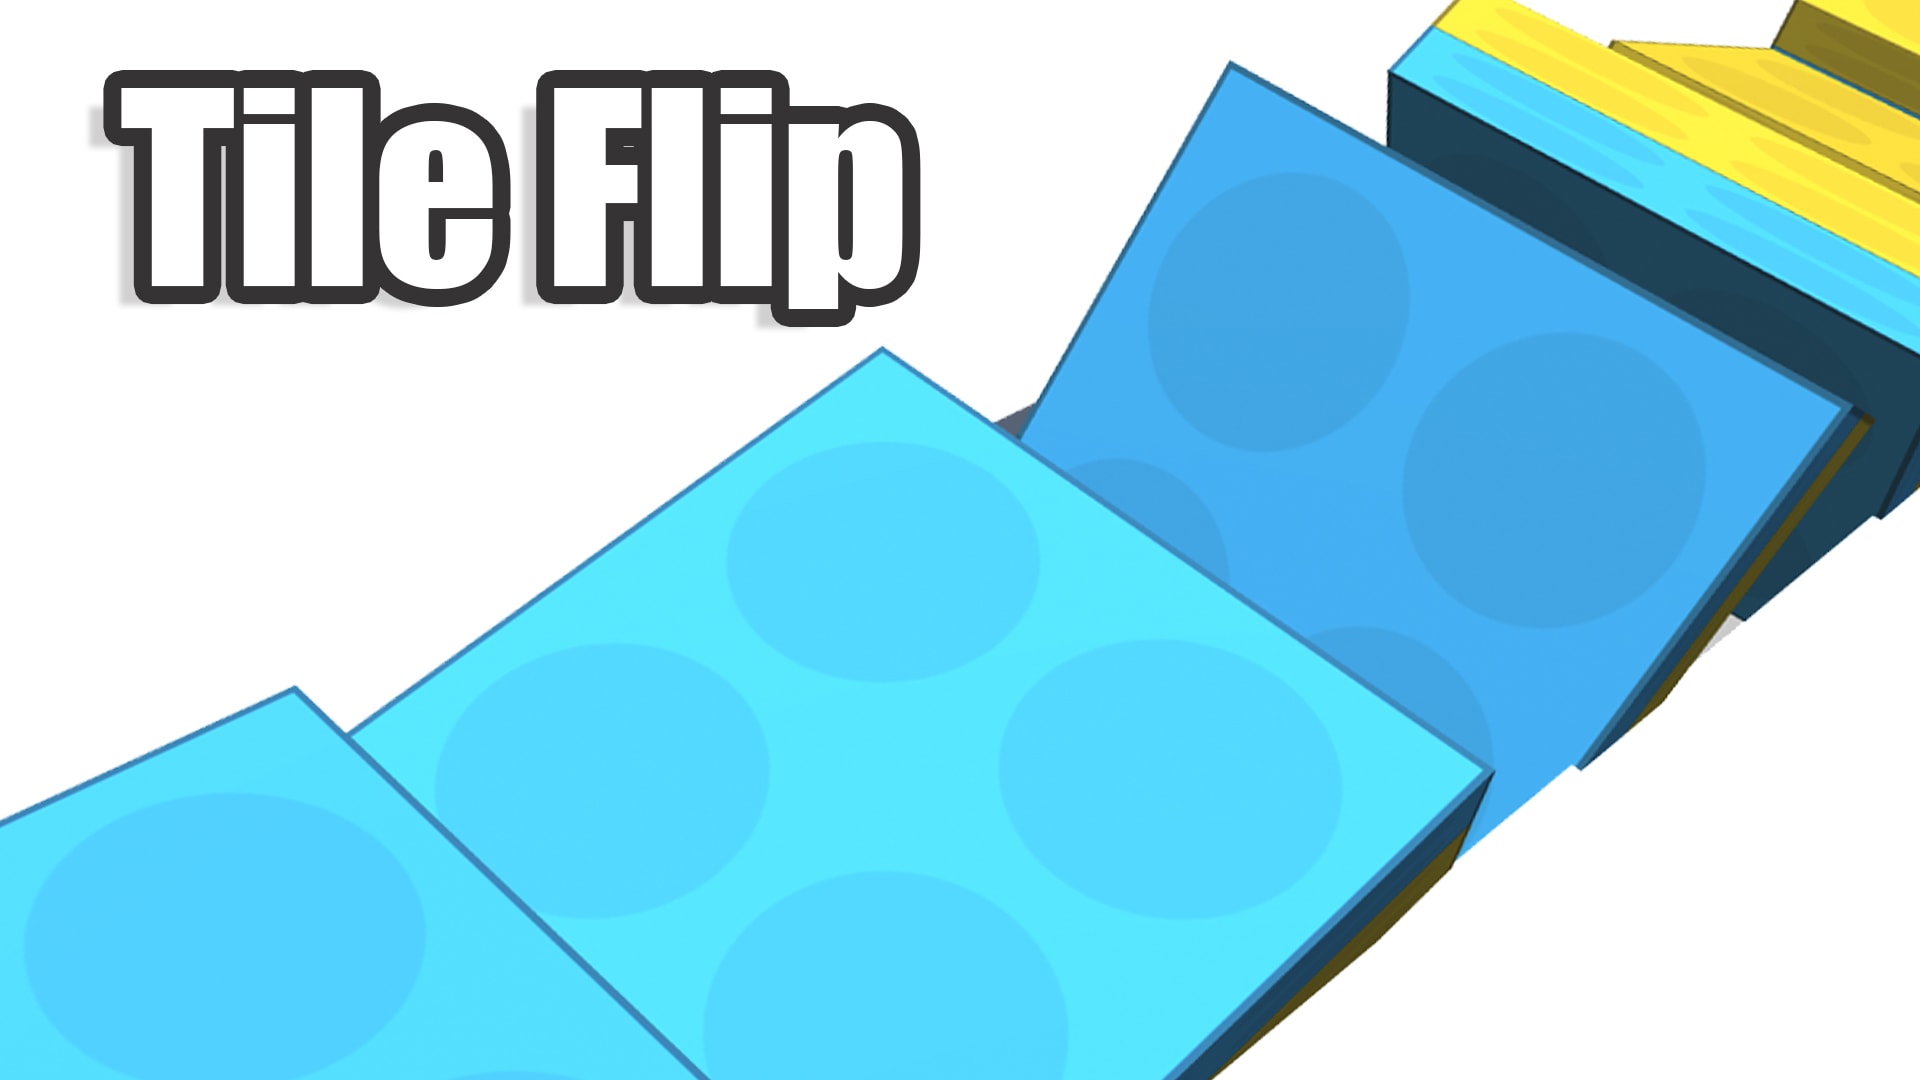 Tile Flip